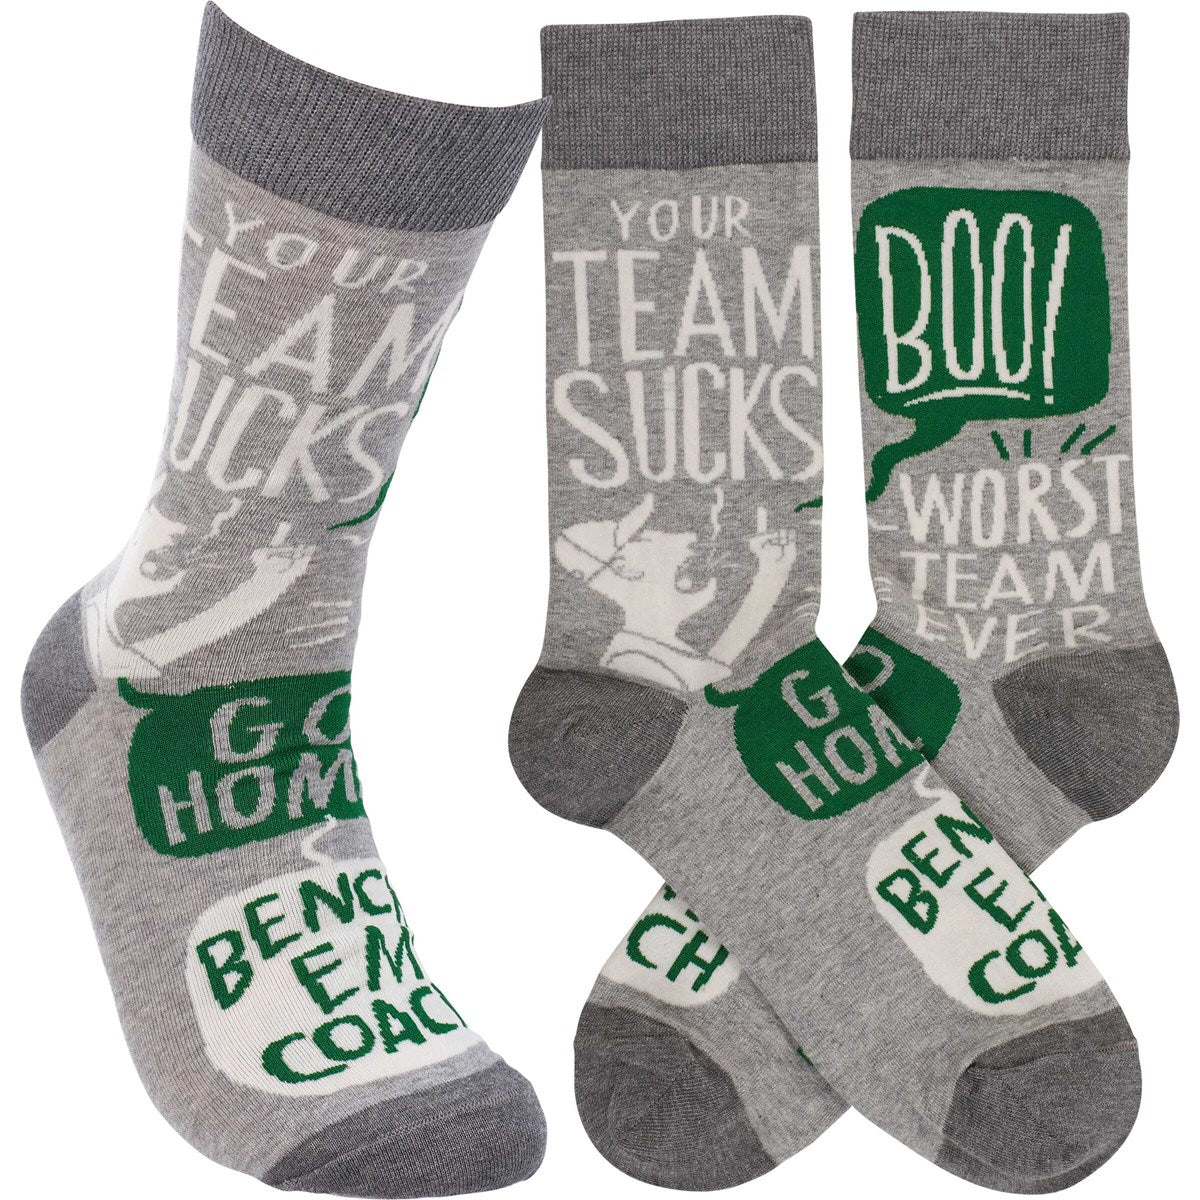 Your Team Sucks Go Home Fun Novelty Socks